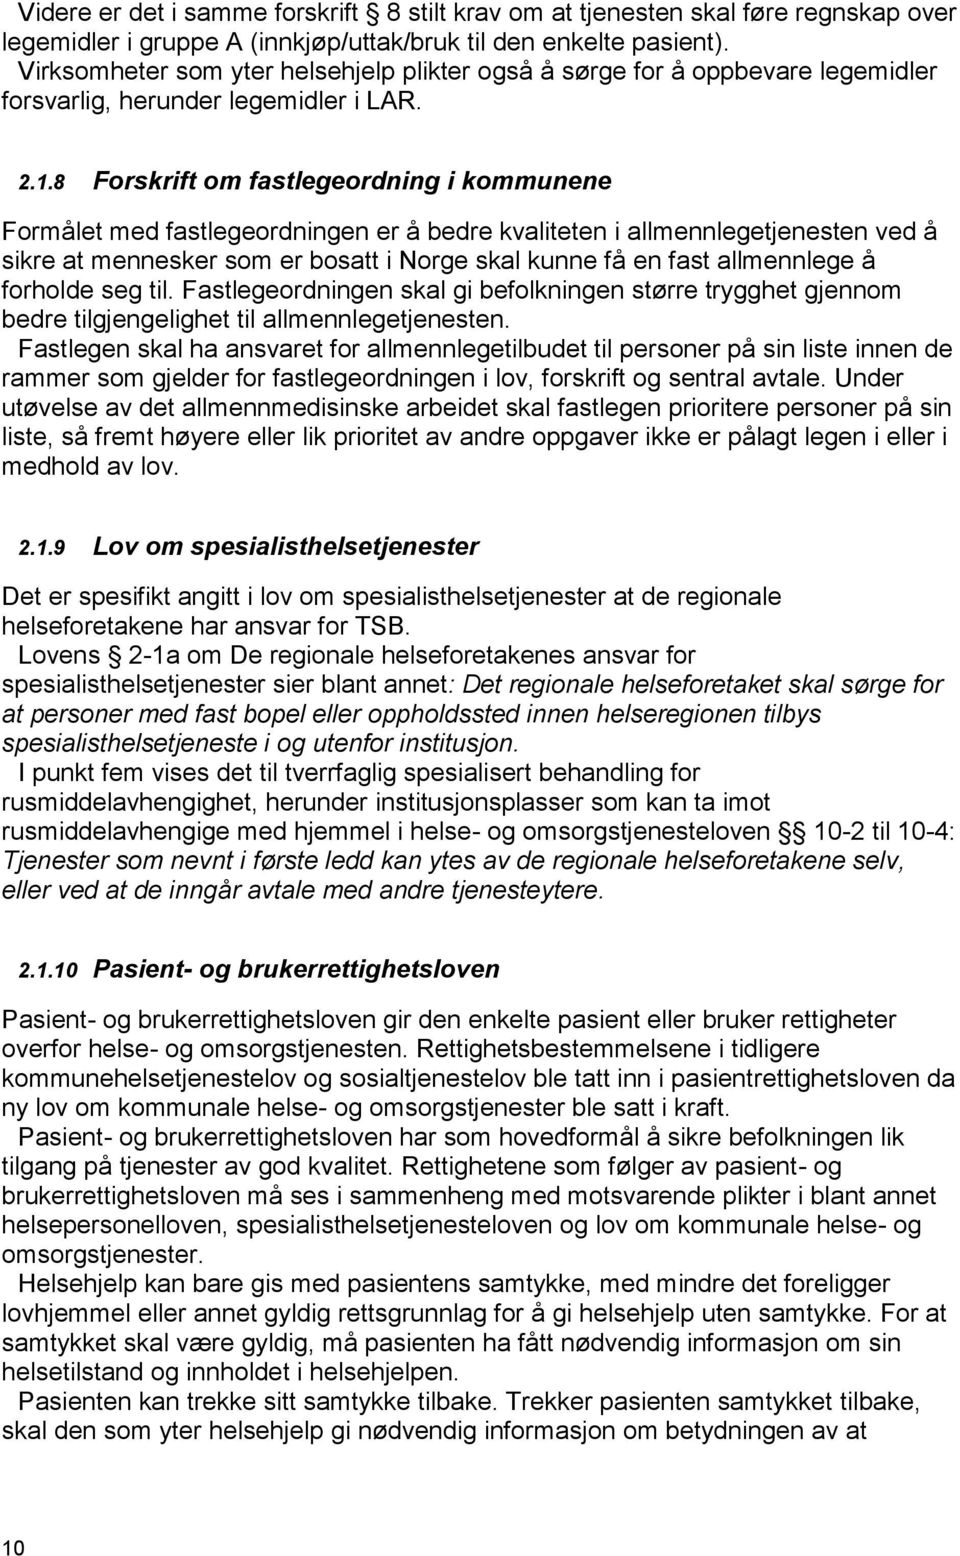 8 Forskrift om fastlegeordning i kommunene Formålet med fastlegeordningen er å bedre kvaliteten i allmennlegetjenesten ved å sikre at mennesker som er bosatt i Norge skal kunne få en fast allmennlege